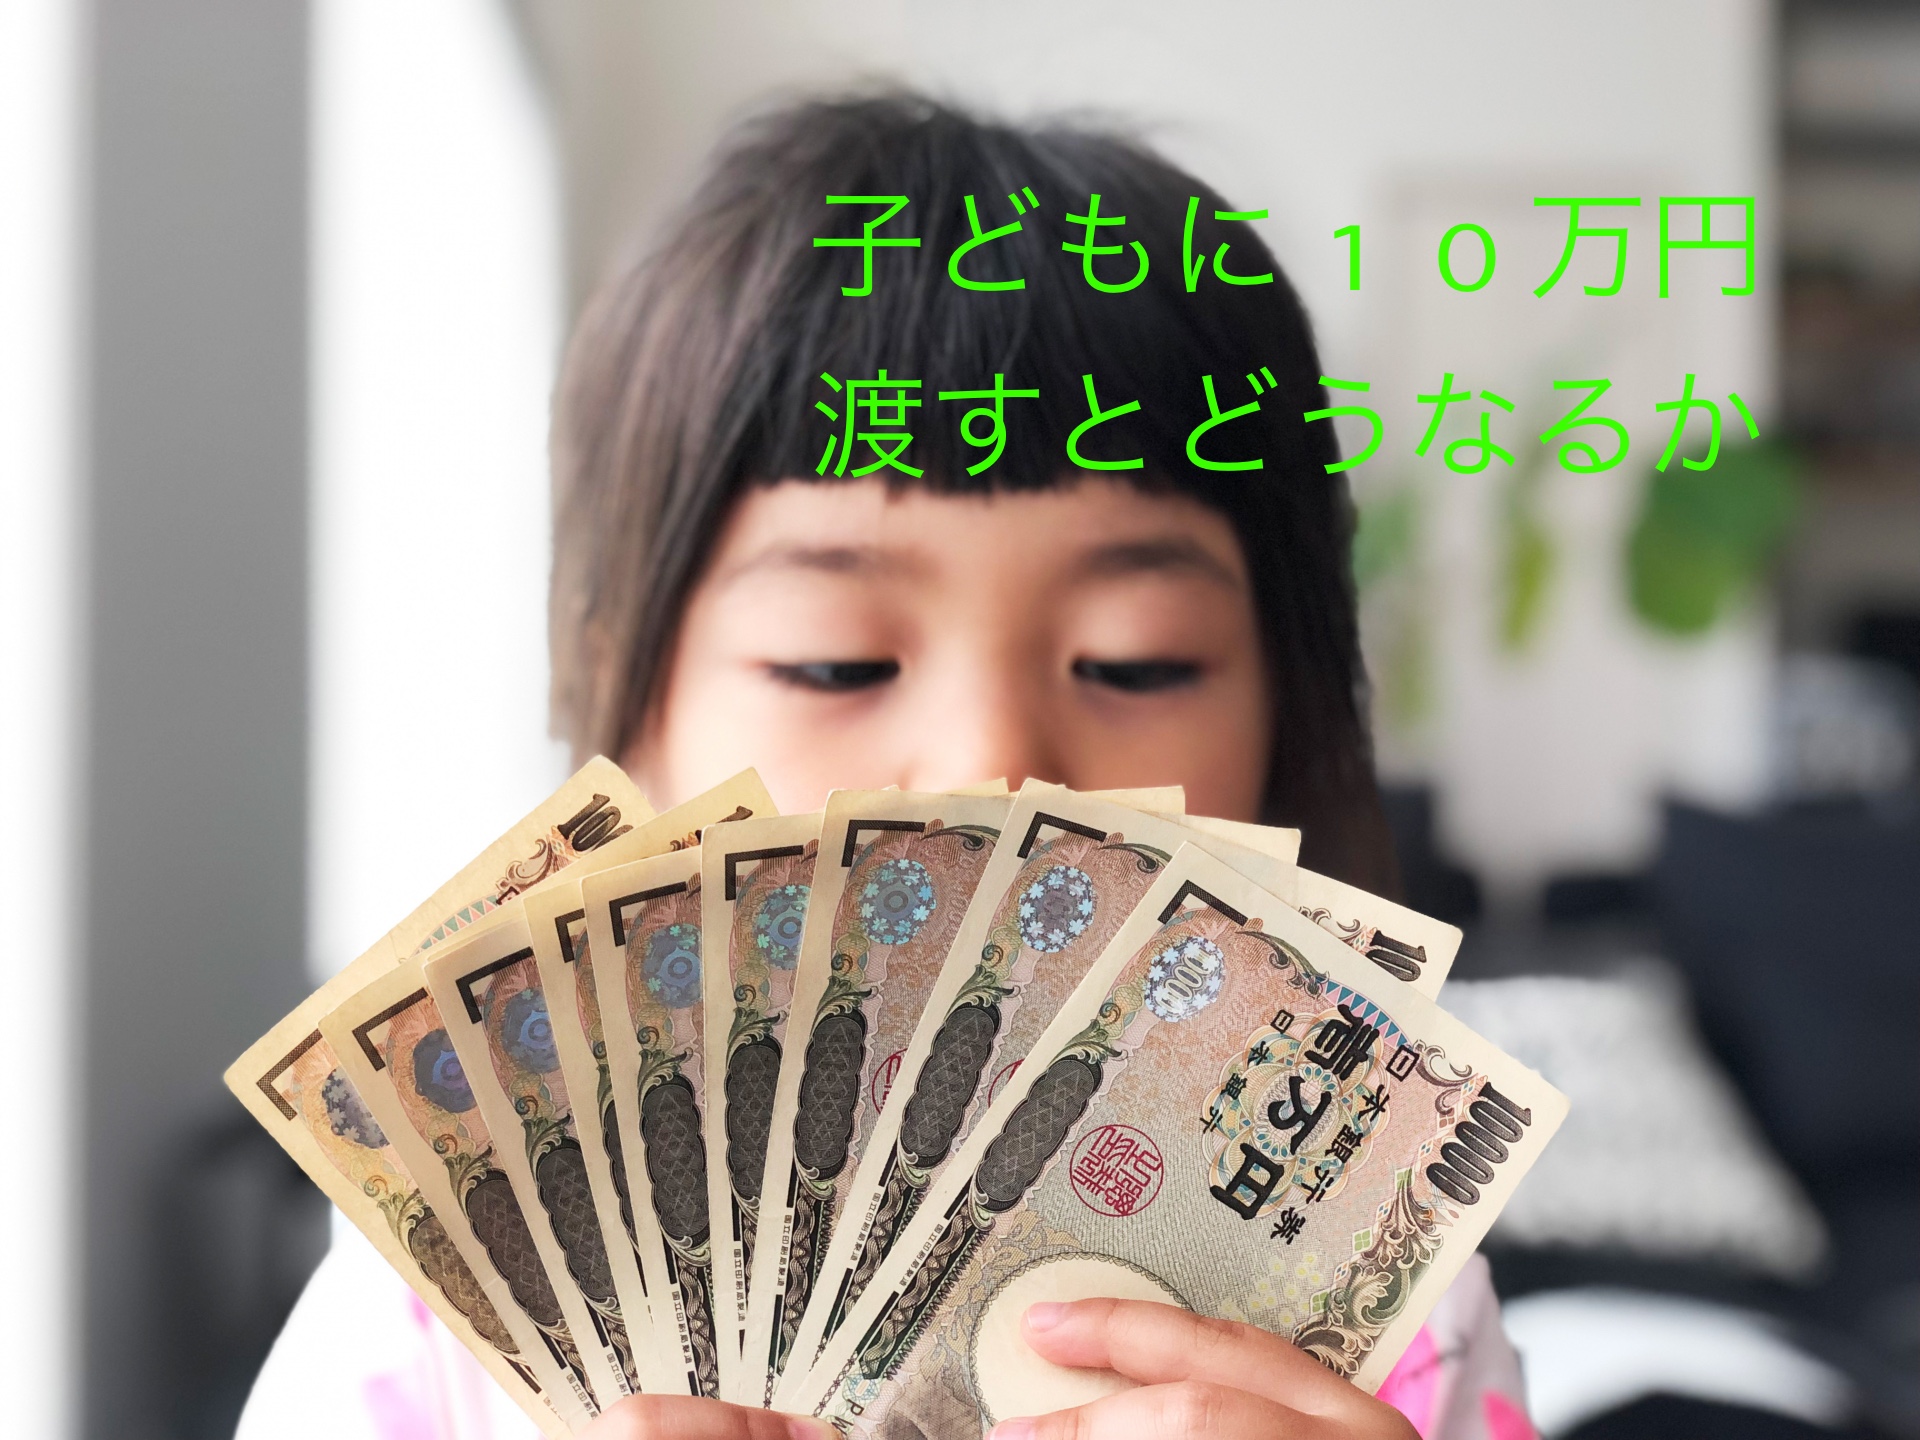 小学4年生に10万円渡して、お金の使い方を学んでもらう【なんとなく思い付いた荒治療法】